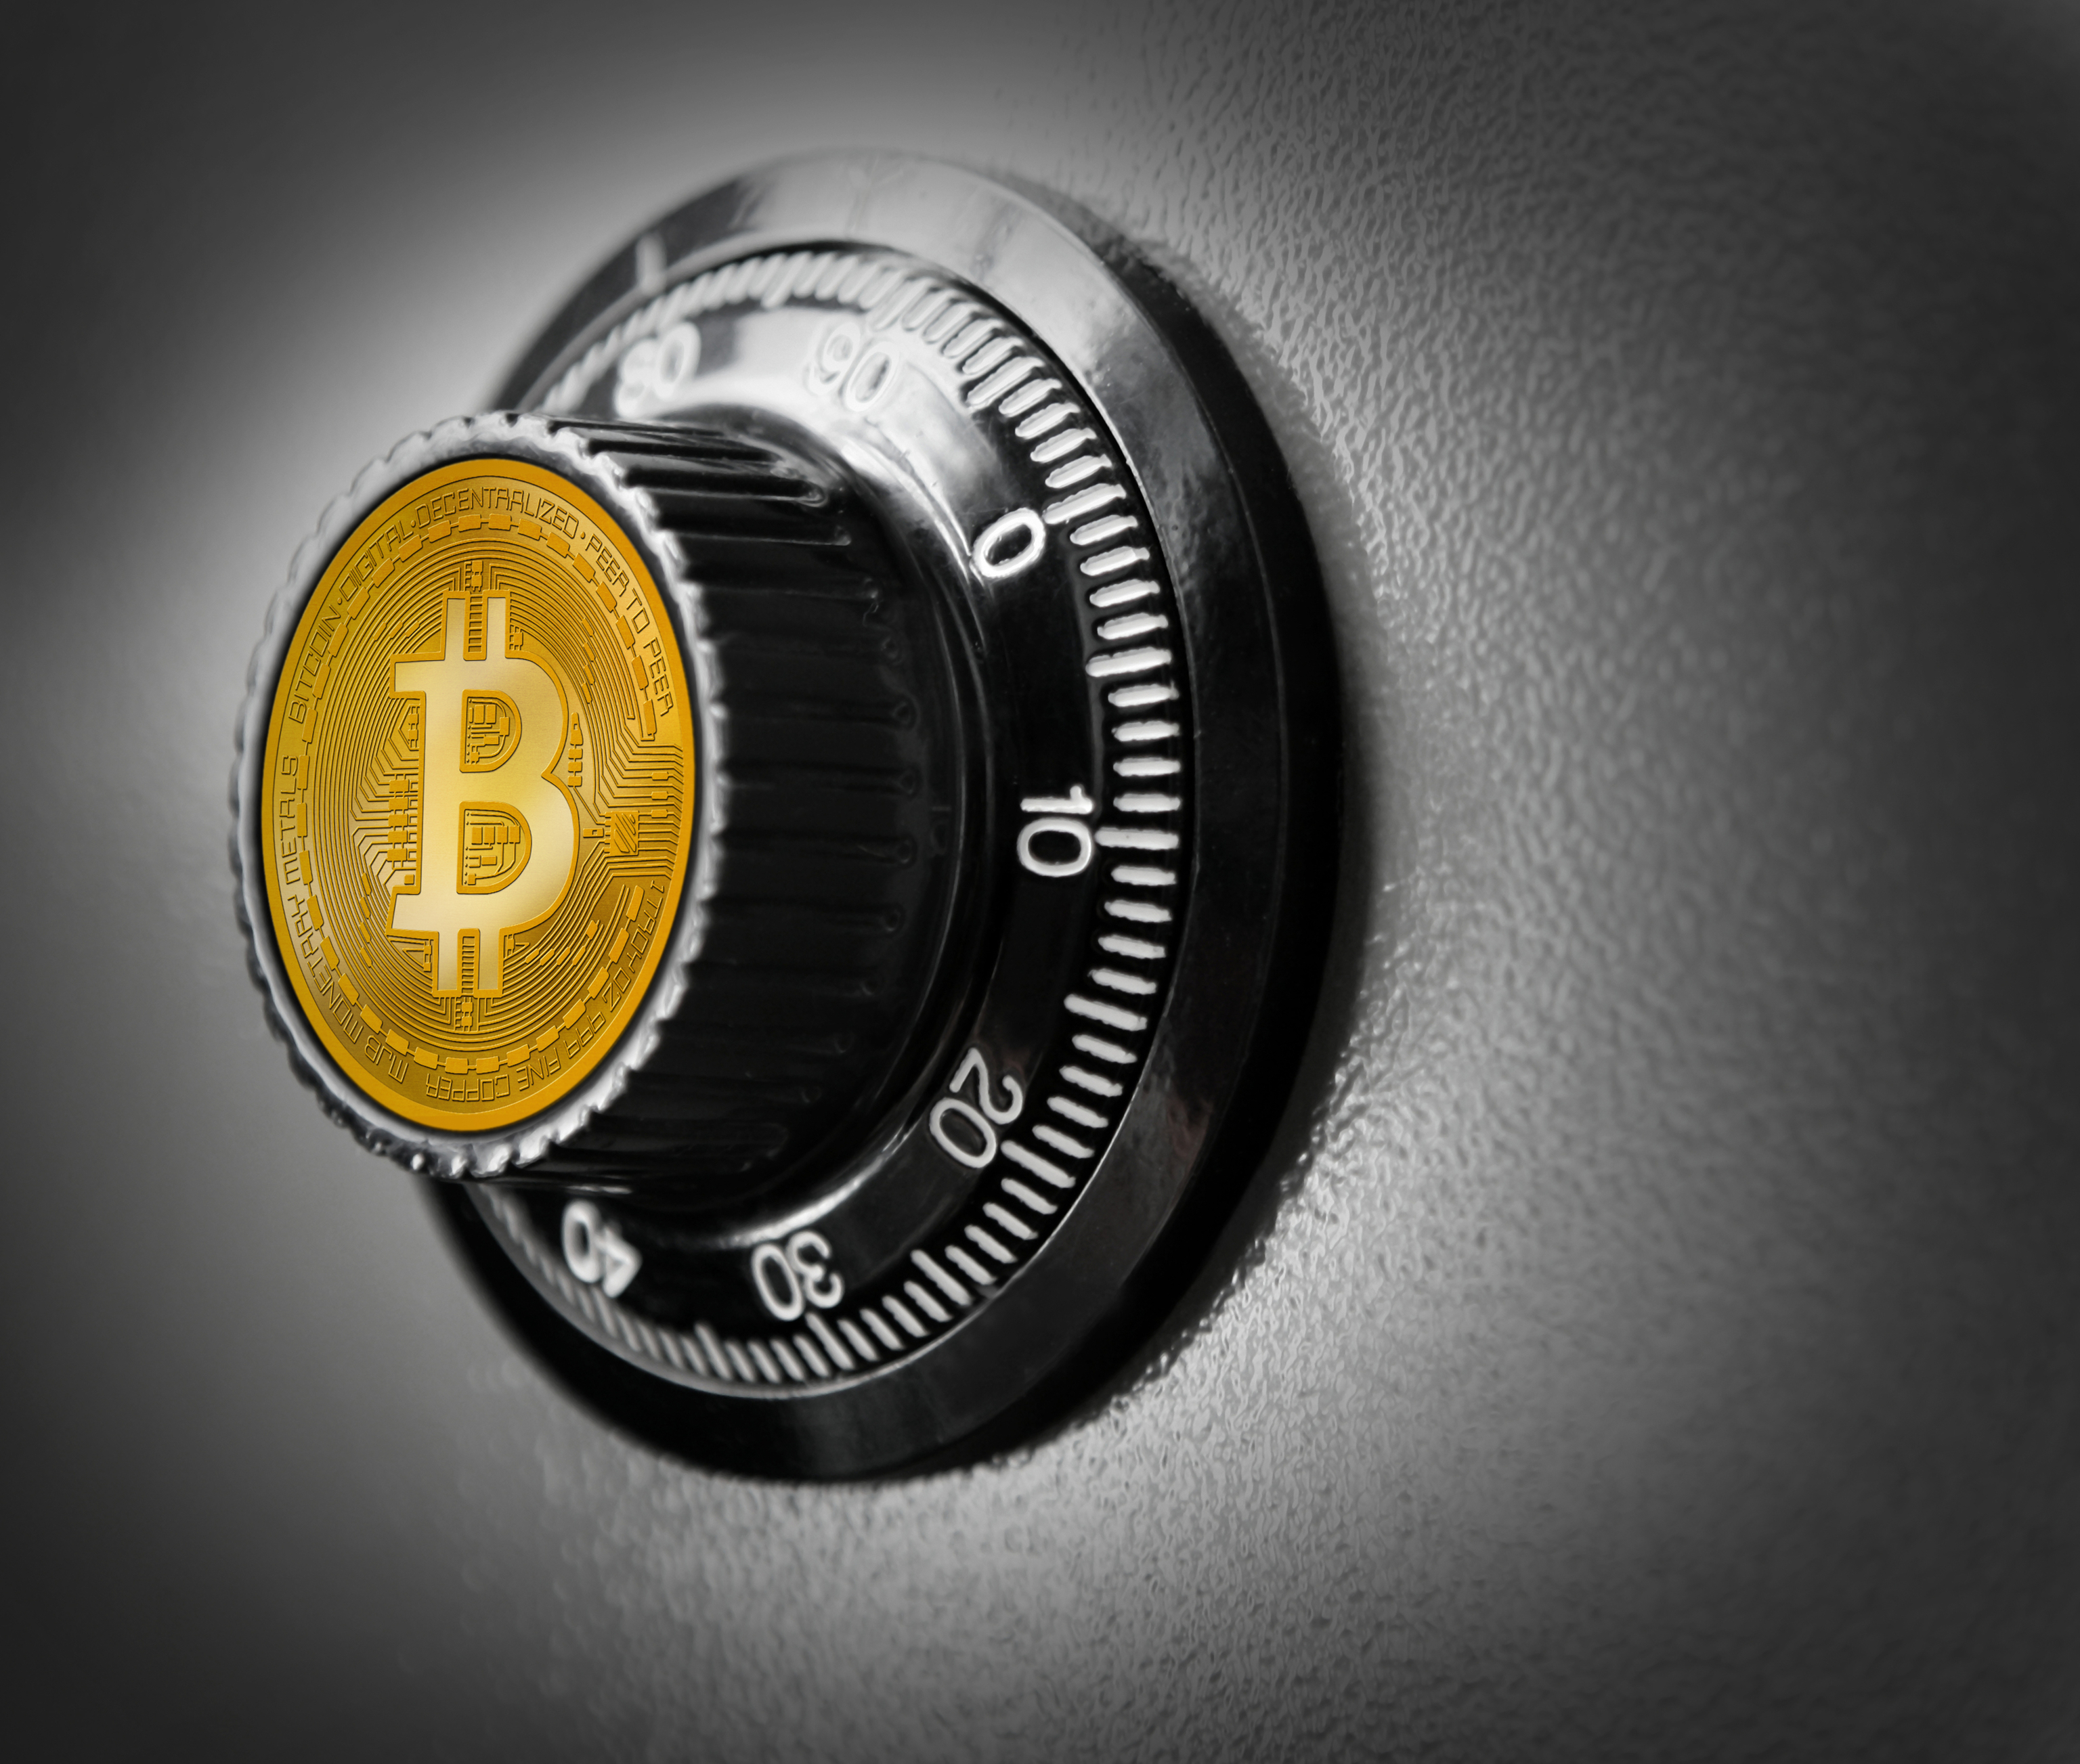 Caja fuerte con el logo de Bitcoin.